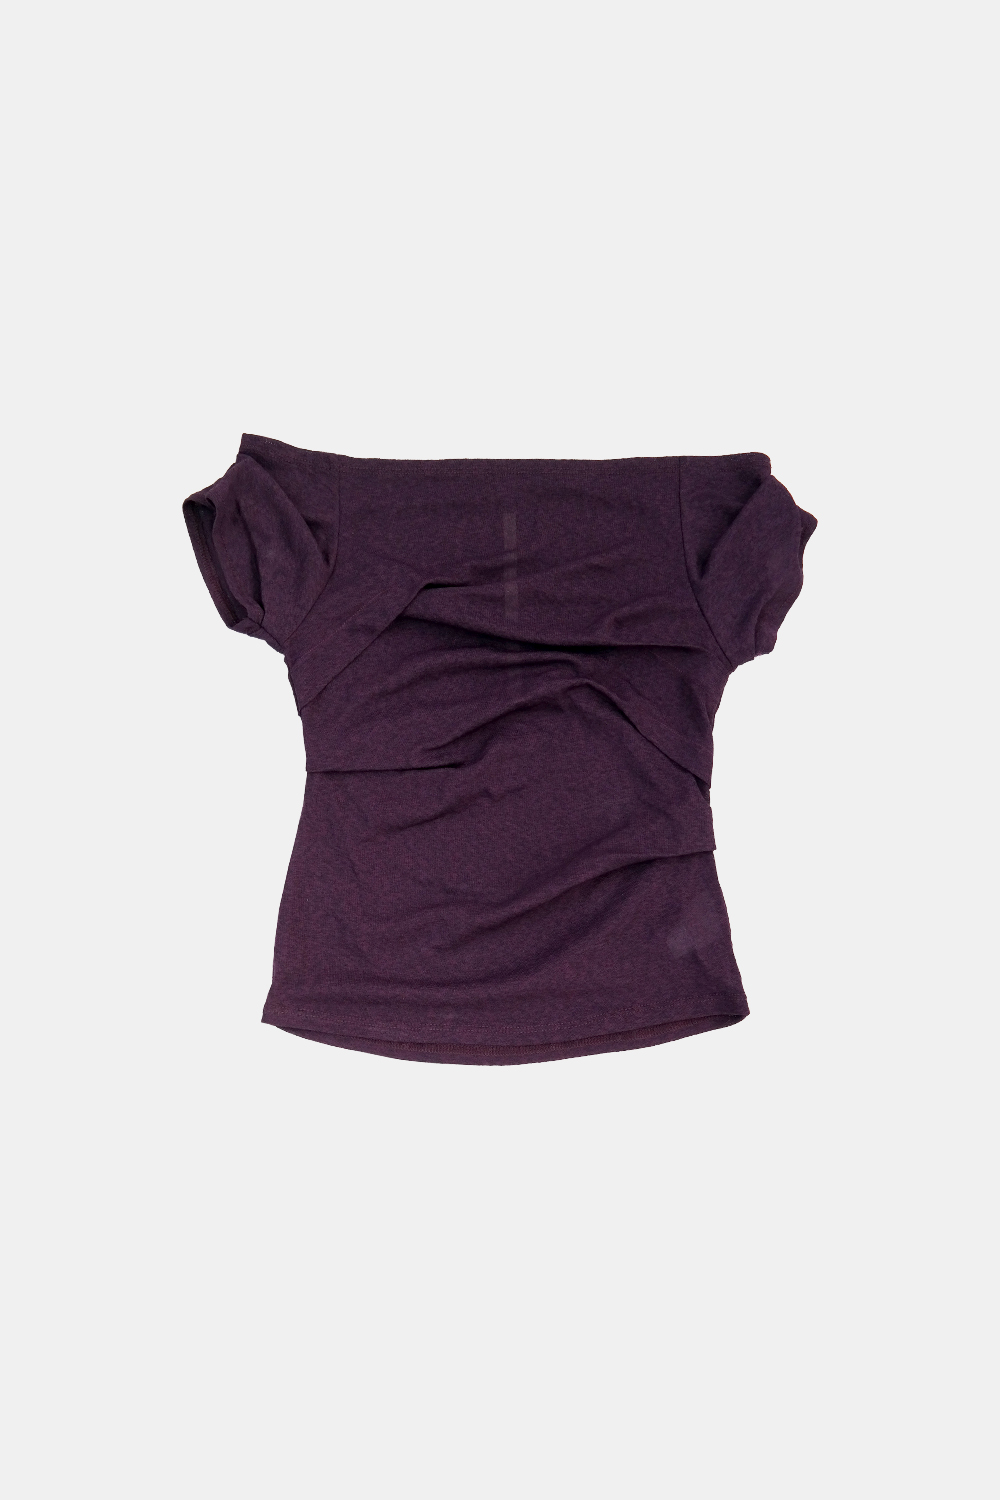 [5/7출고]  draping off-shoulder top (purple)